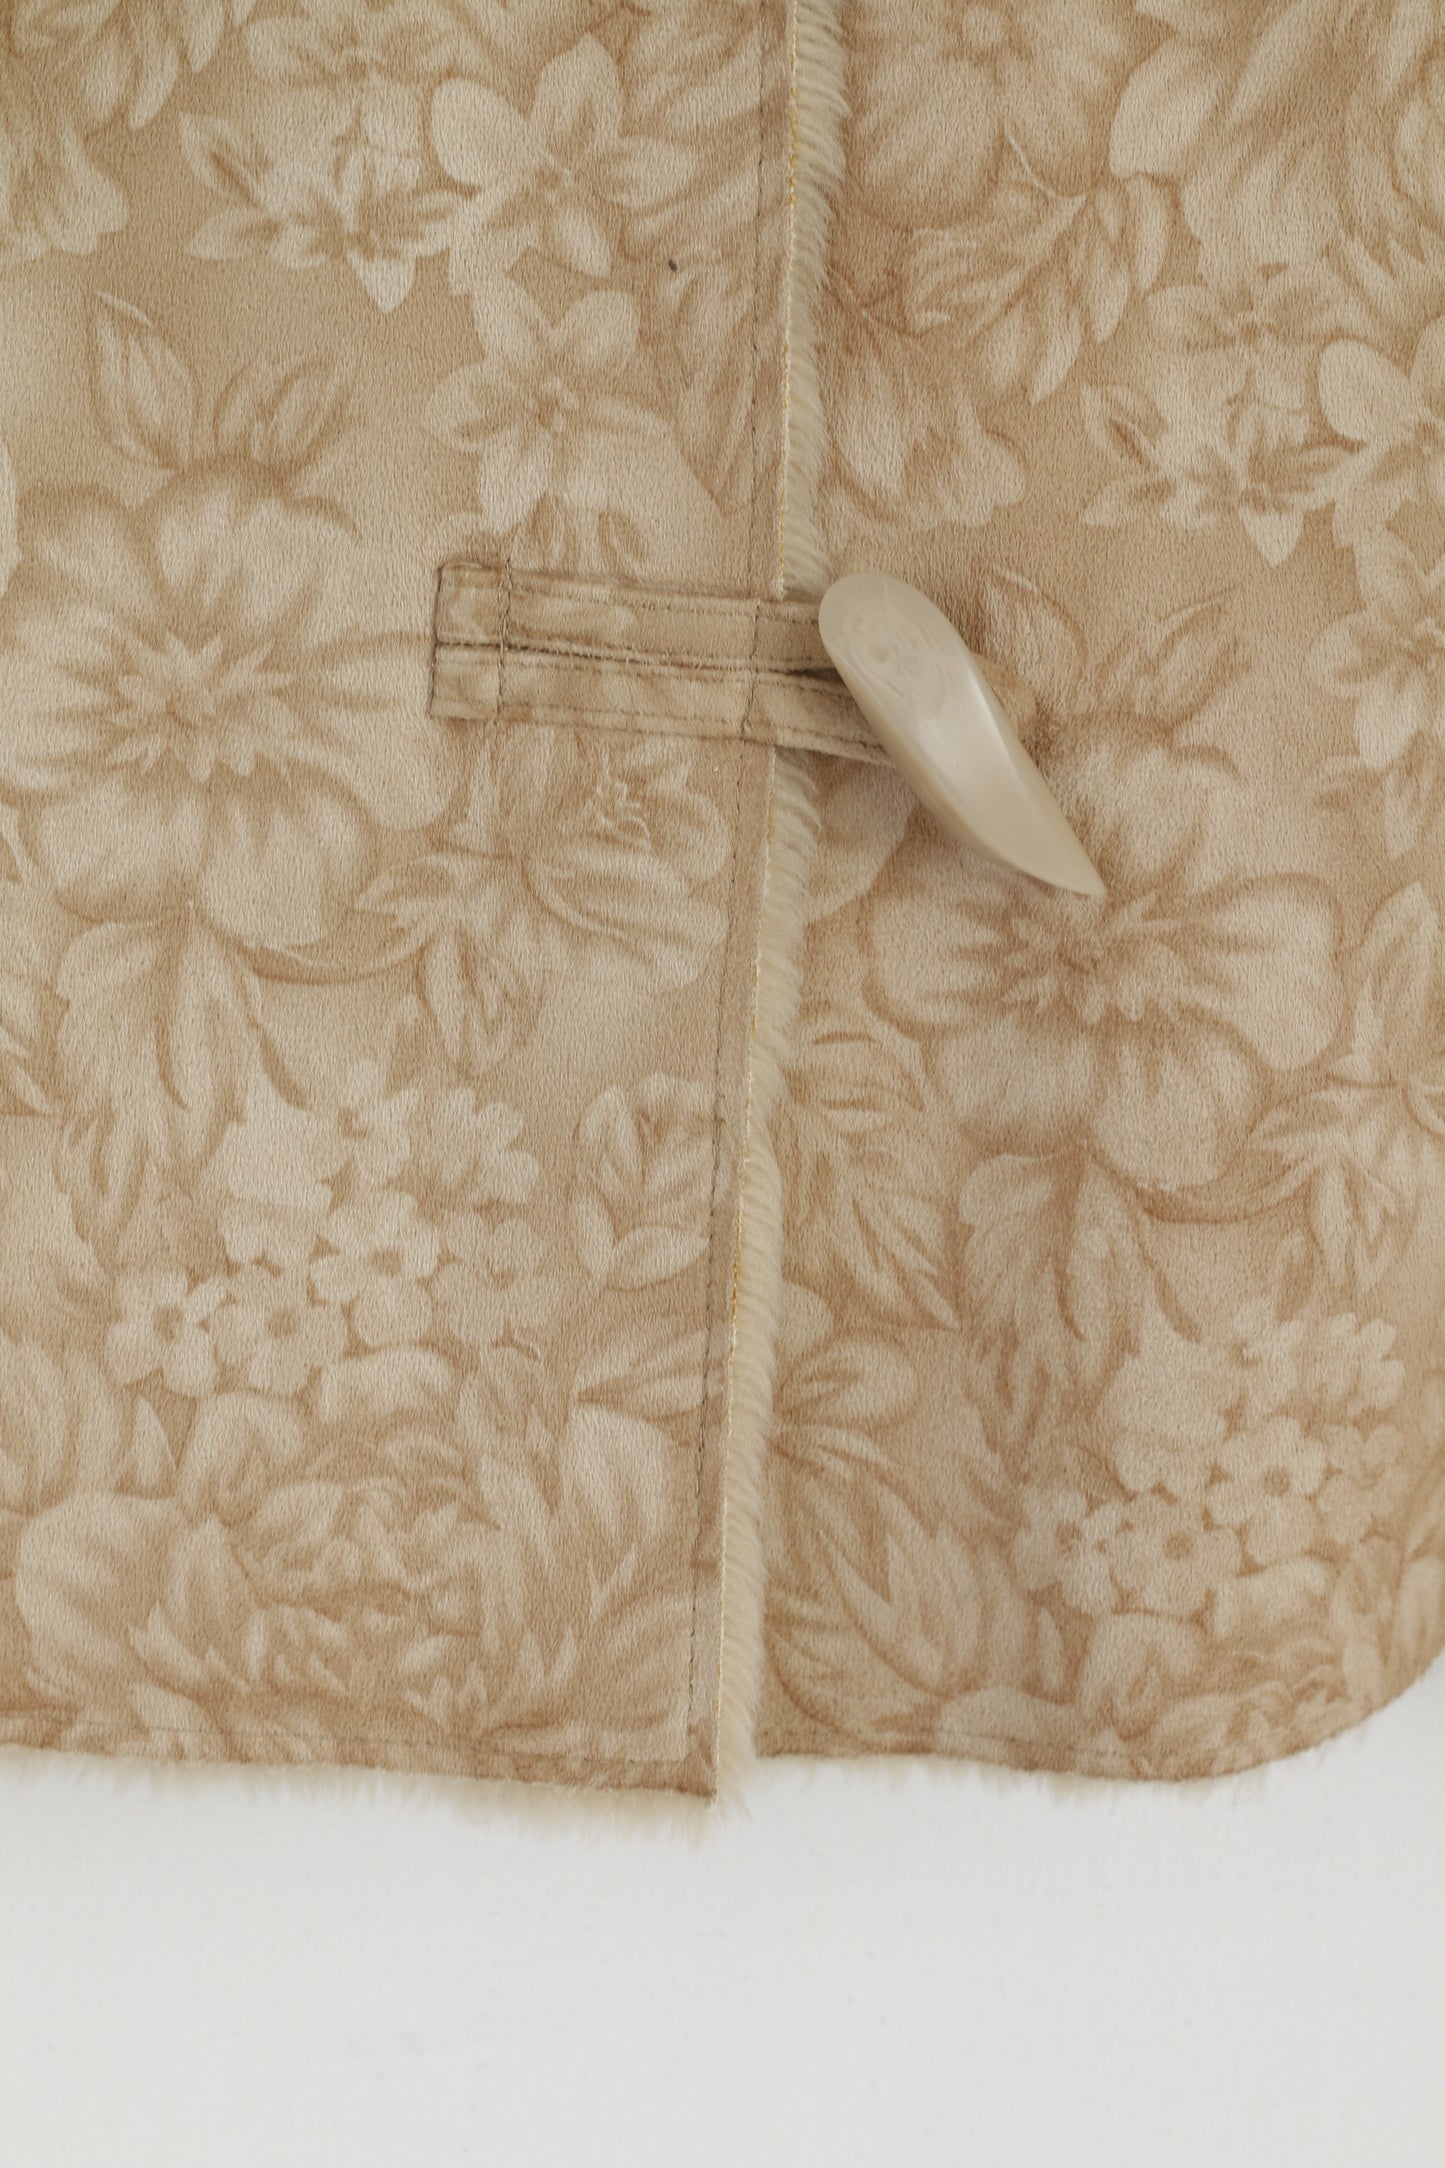 Precis Petite Women 12 38 M Waistcoat Beige Duffle Soft Floral Print Vest Boho Top